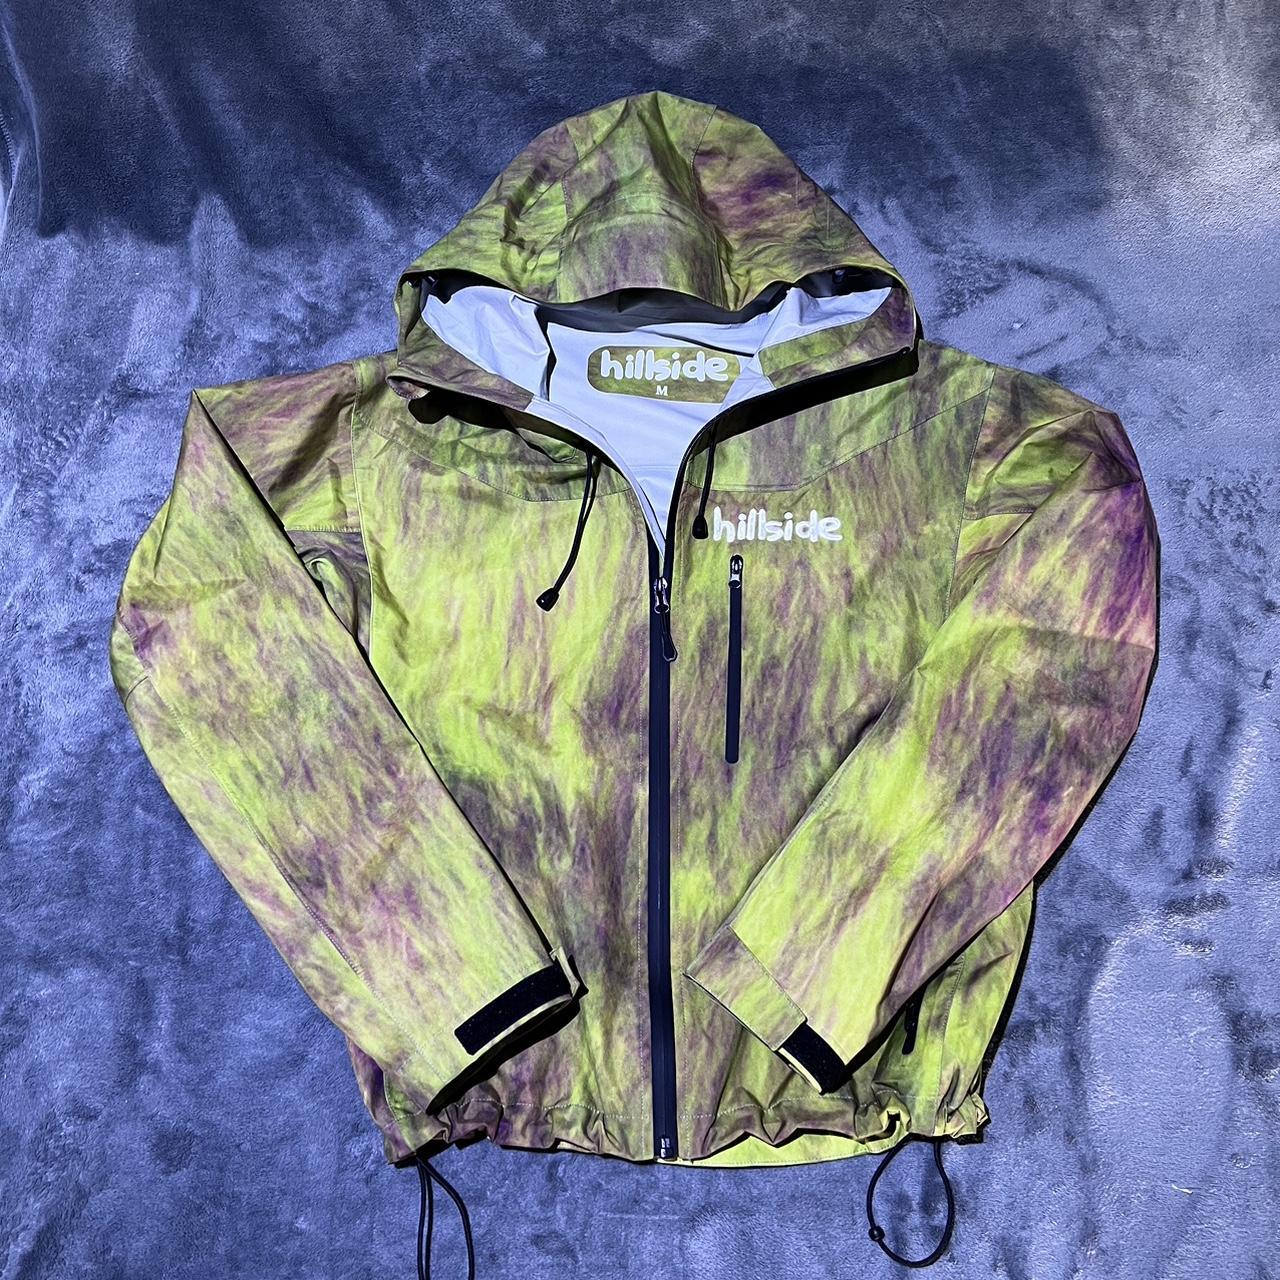 Hillside rain jacket Size medium Gutter green - Depop